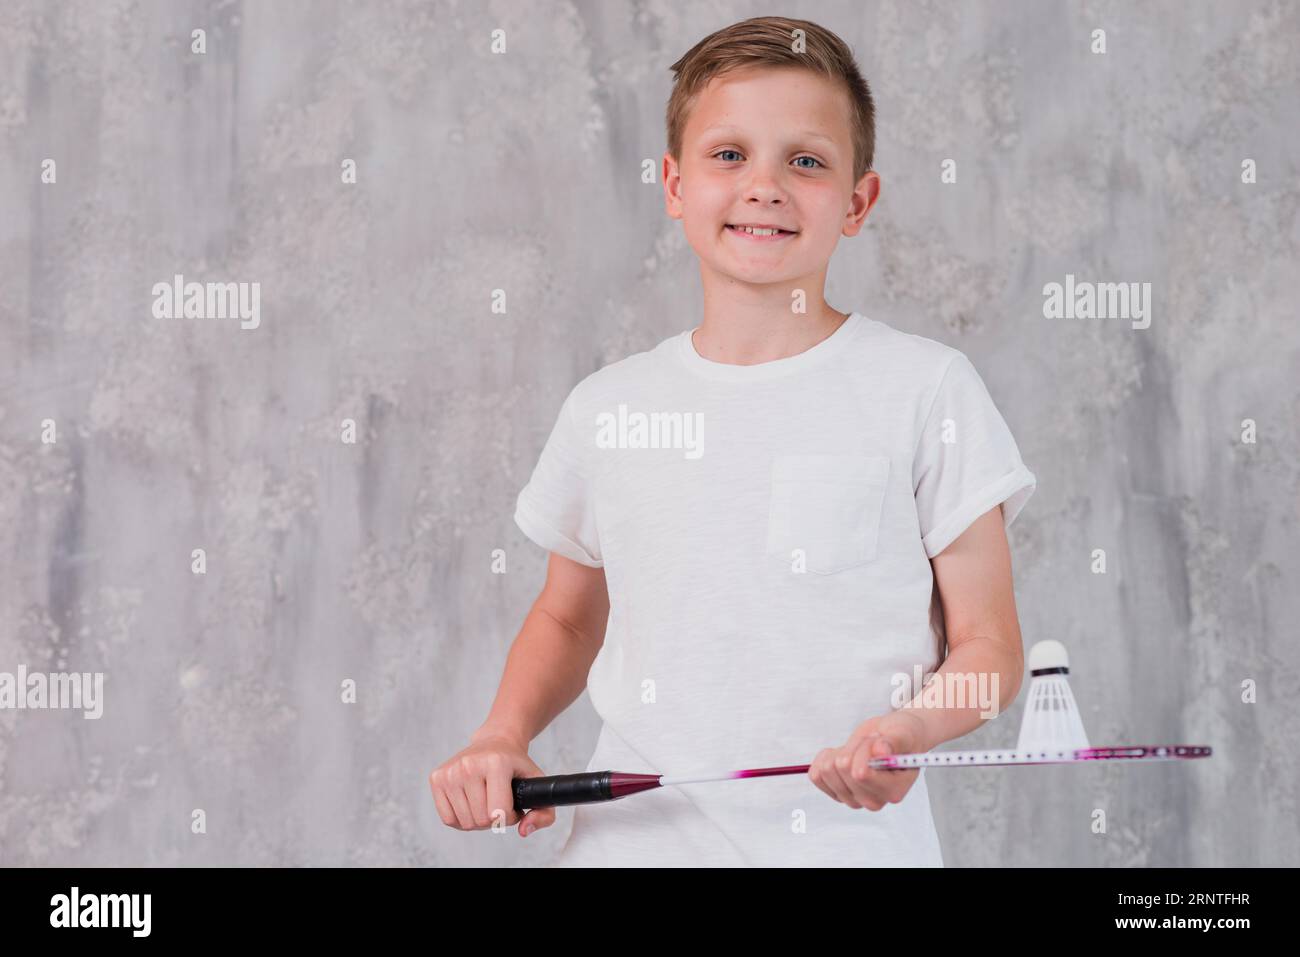 Porträt lächelnder Junge, der eine Kamera hält, die wie ein Schläger aussieht Stockfoto